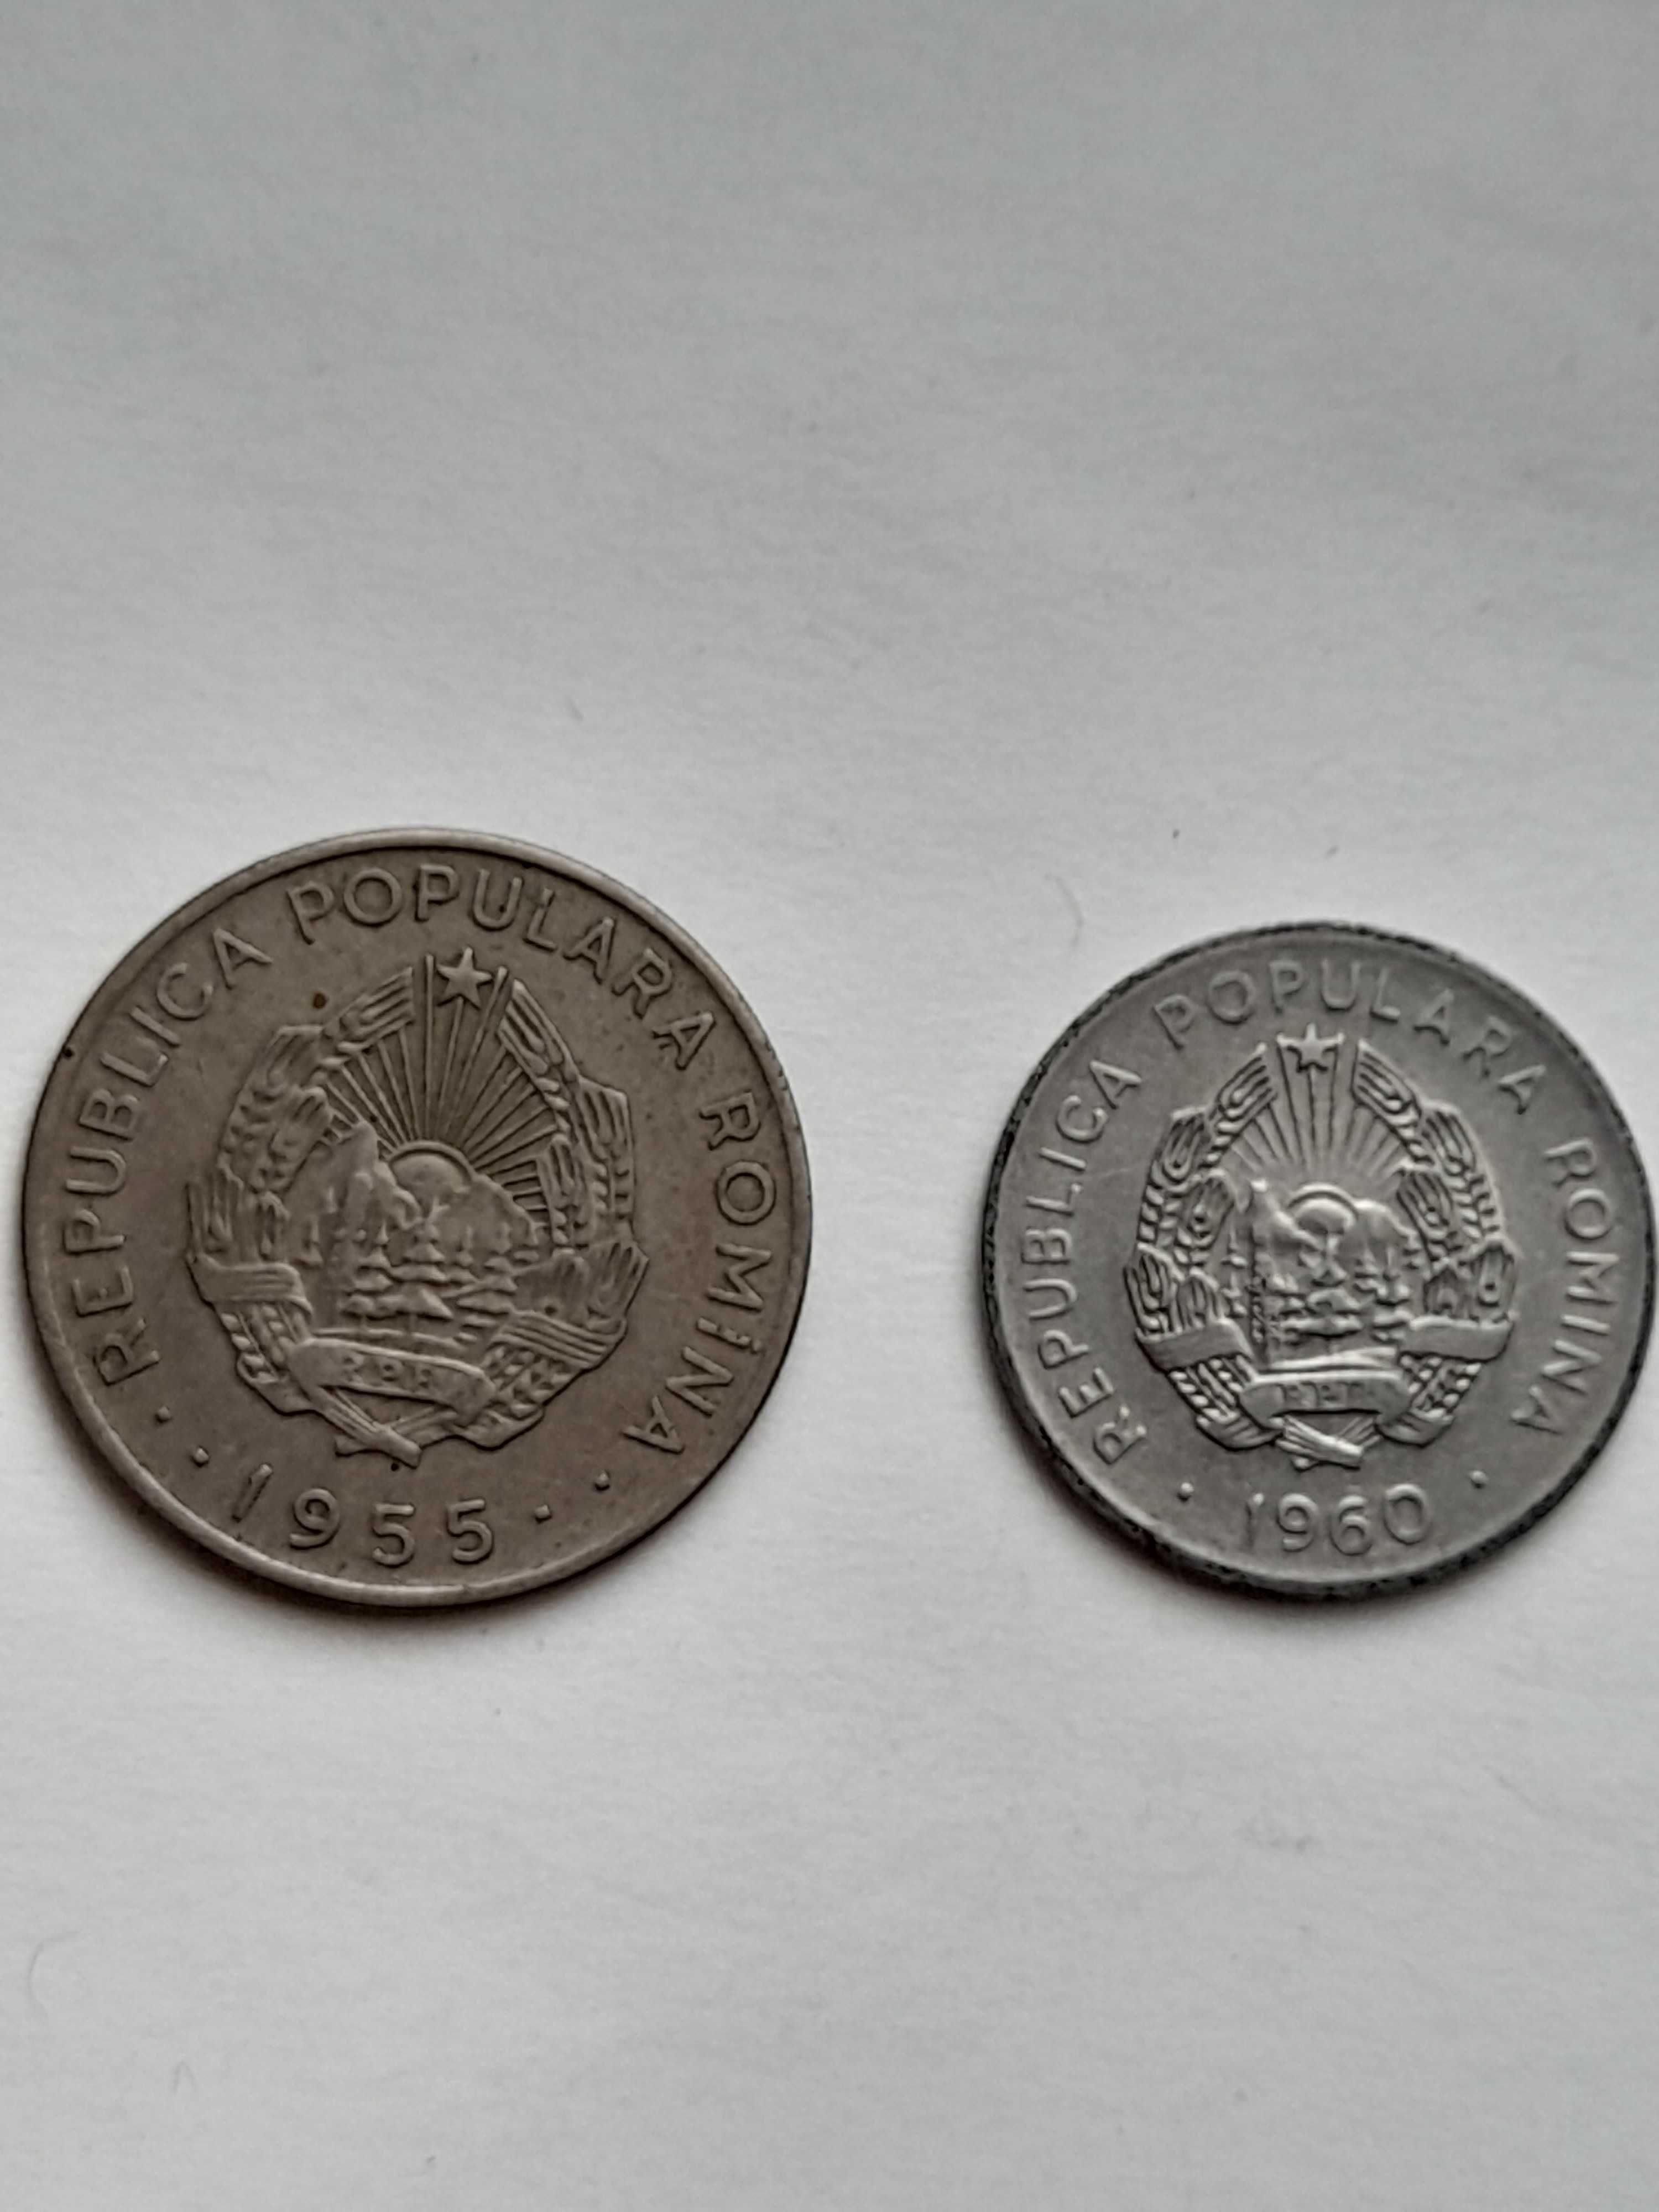 Монети Румунія 1955-1960р.р.